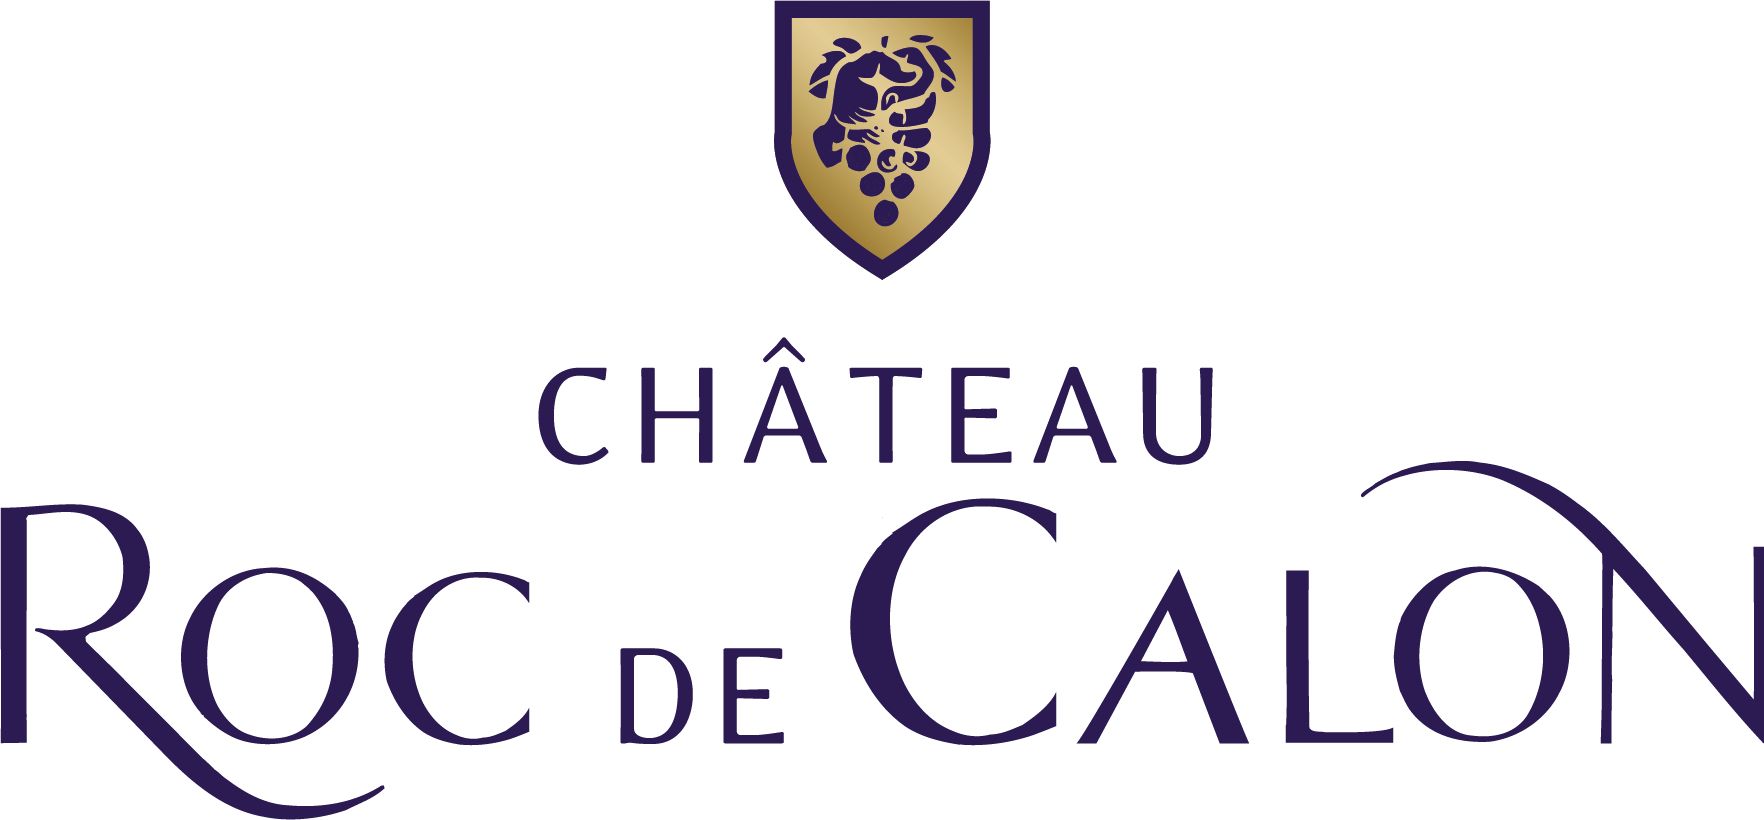 Château Roc de Calon